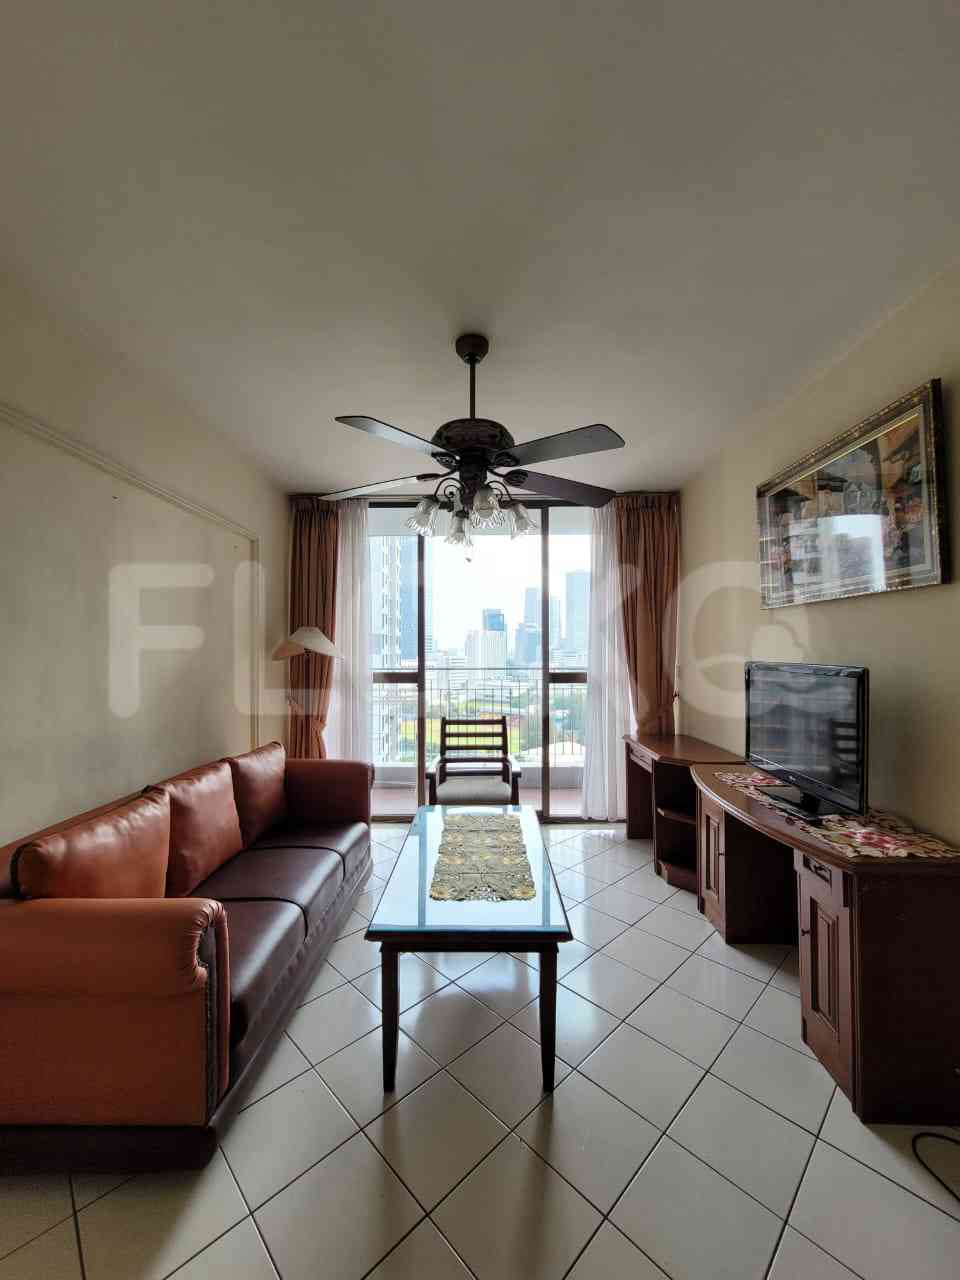 2 Bedroom on 23rd Floor for Rent in Taman Rasuna Apartment - fku9de 9